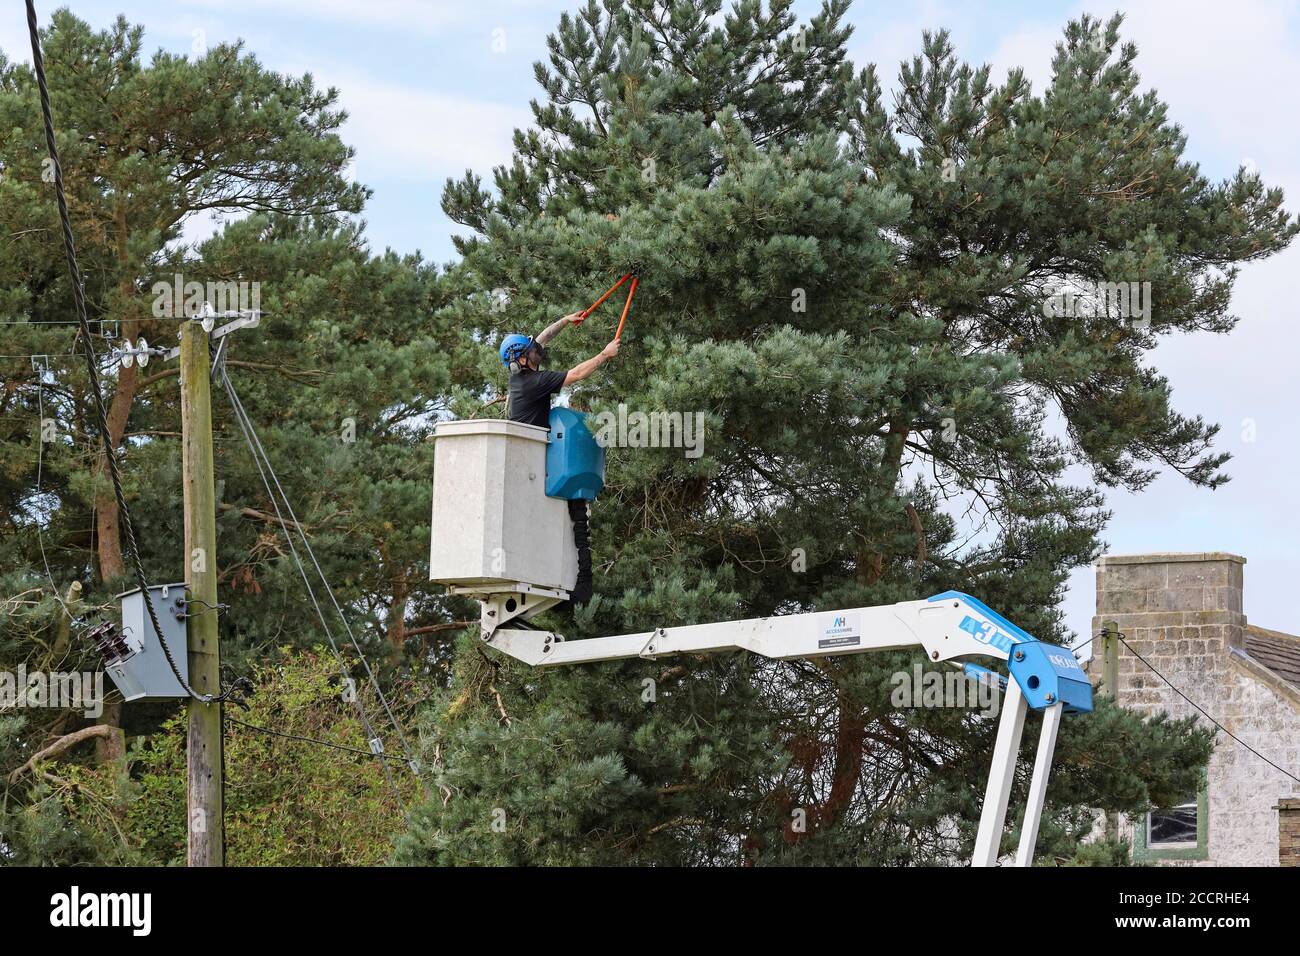 Mitarbeiter von Amey, der das Vegetationsmanagement für Northern Power Grid auf Bäumen rund um Stromleitungen durchführt, County Durham, Großbritannien Stockfoto